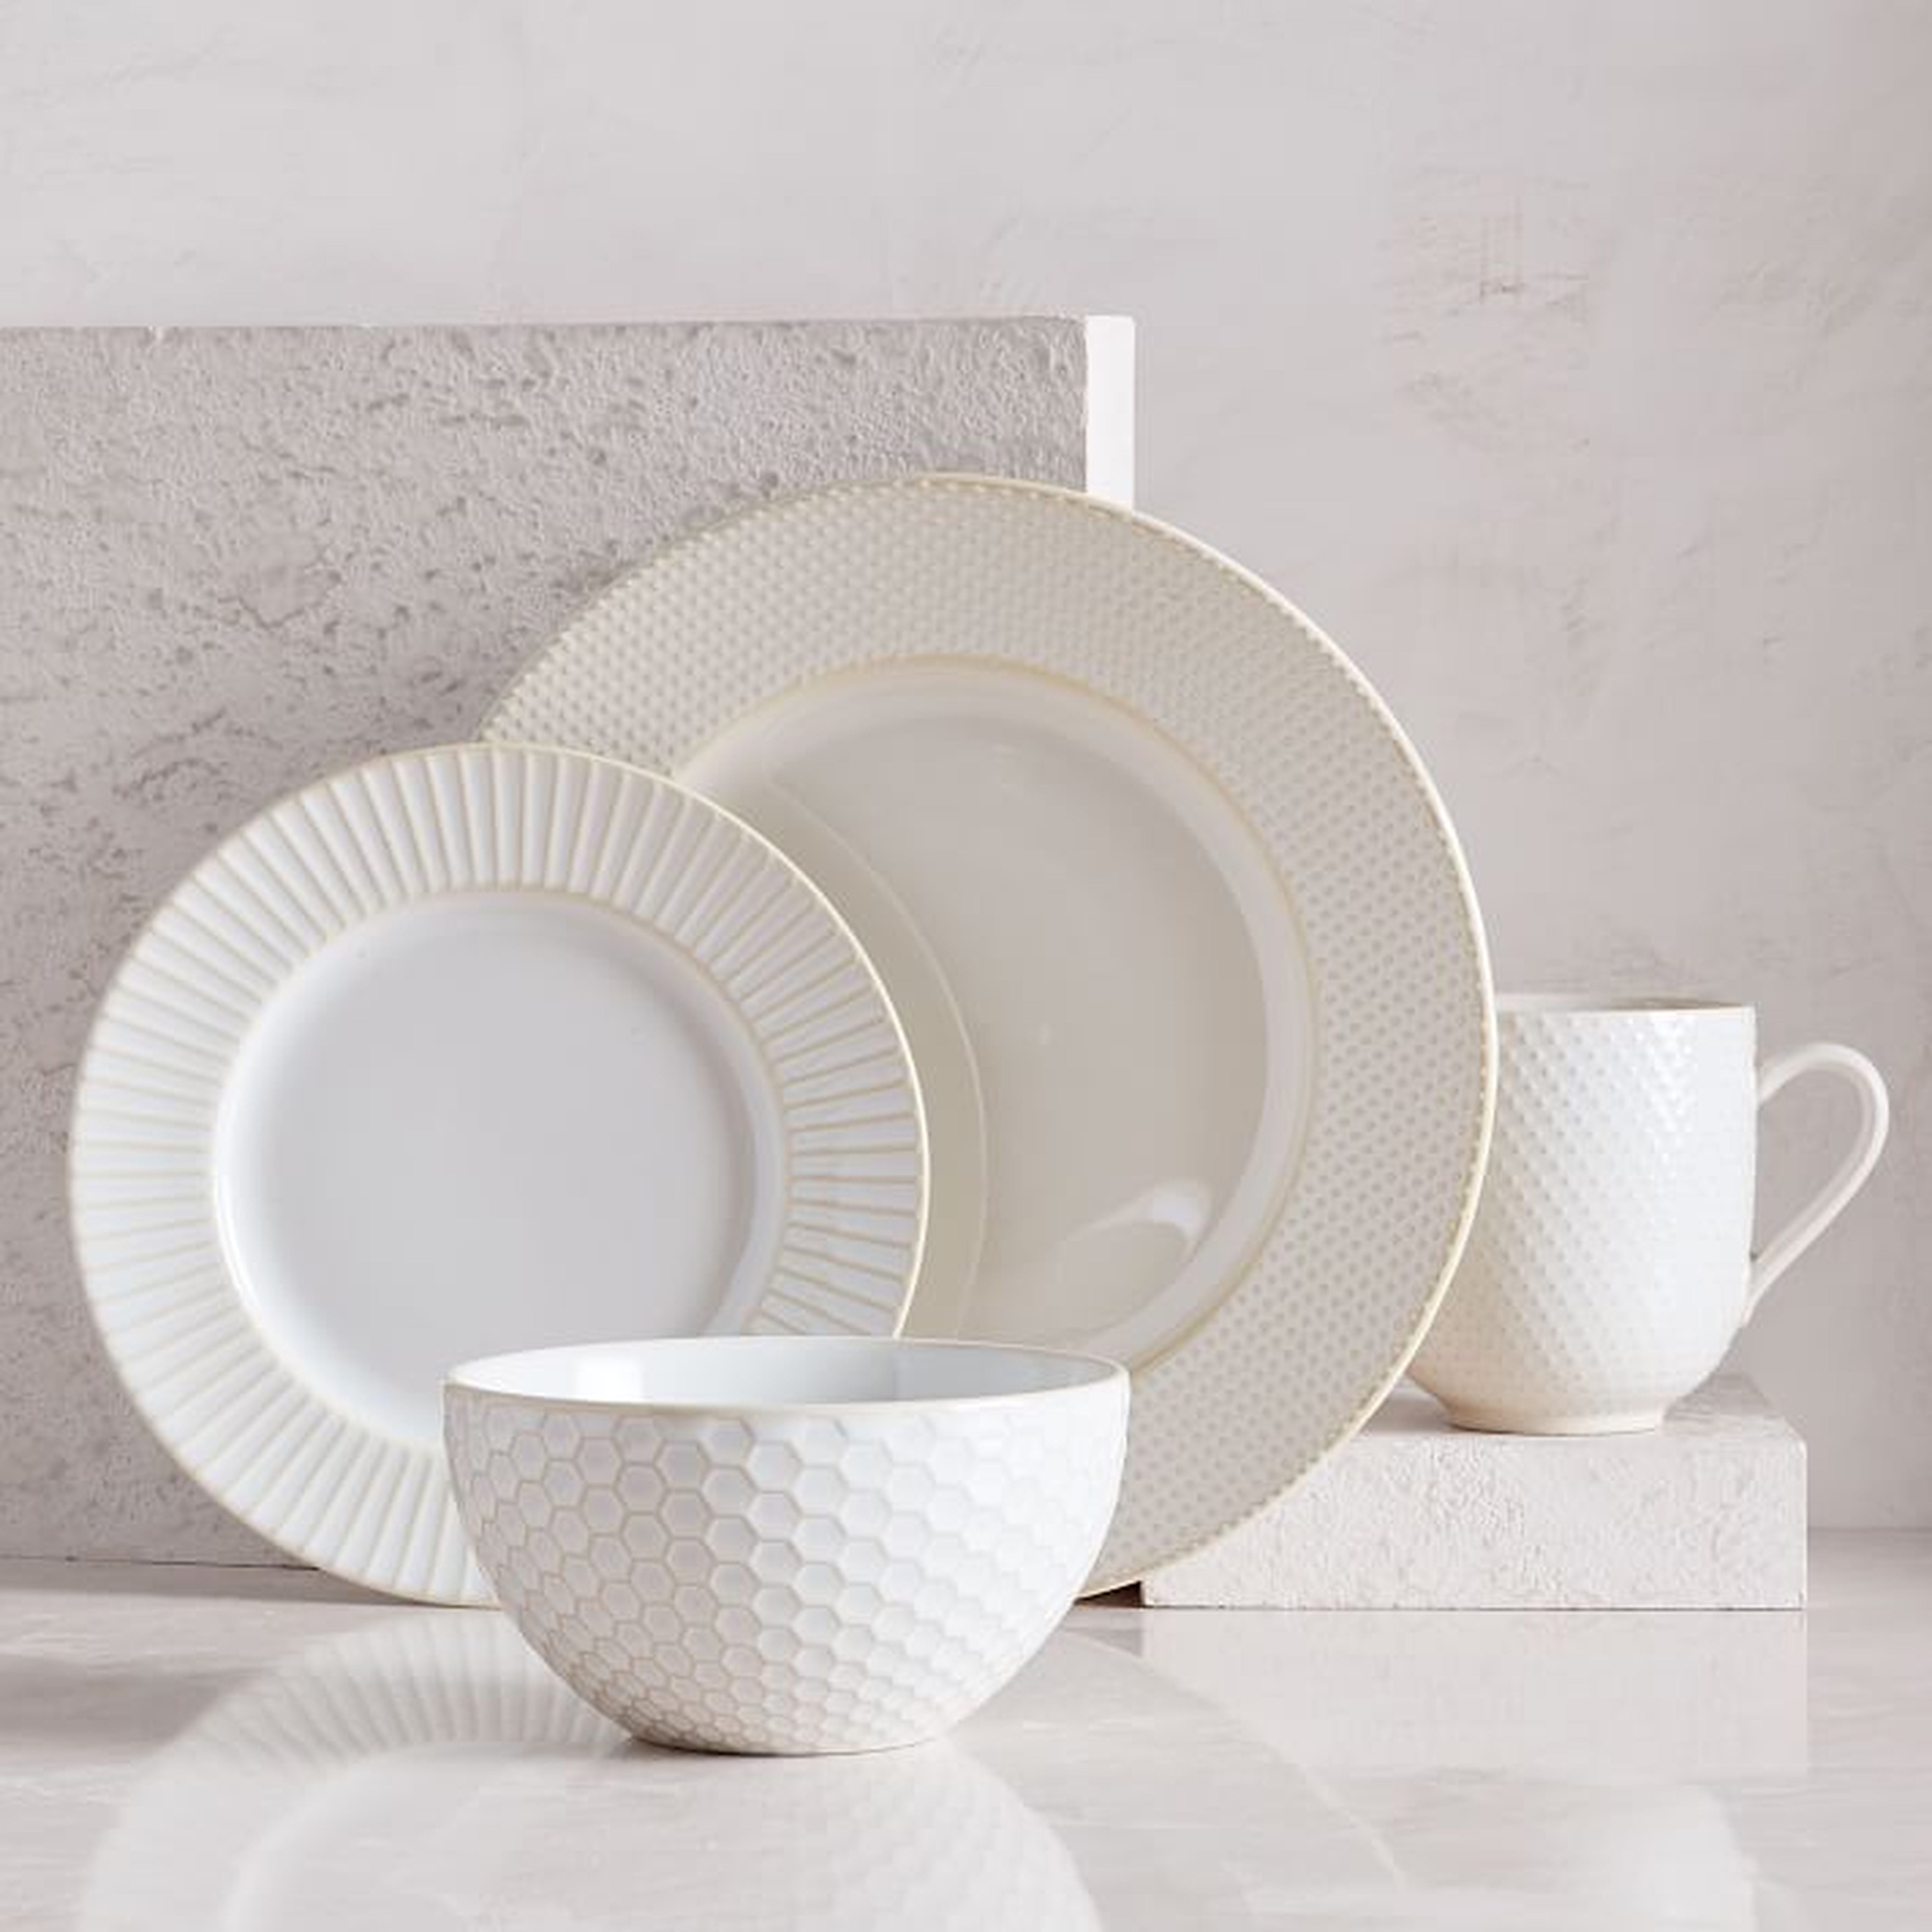 Textured Dinnerware, Set of 16, White - West Elm